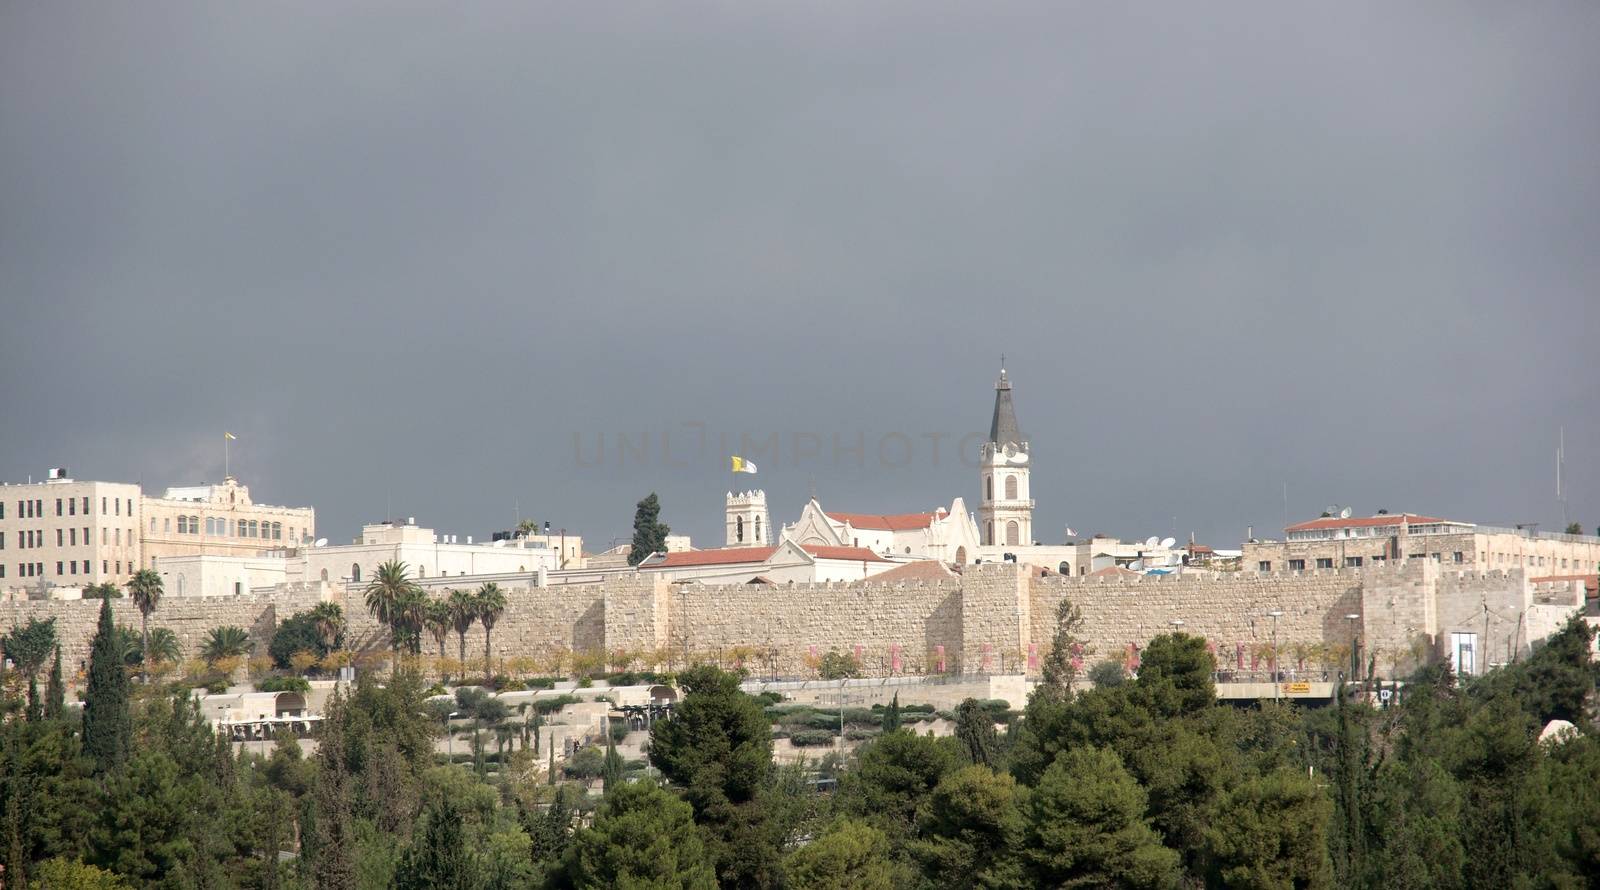 Jerusalem old city monastery under dramatic sky